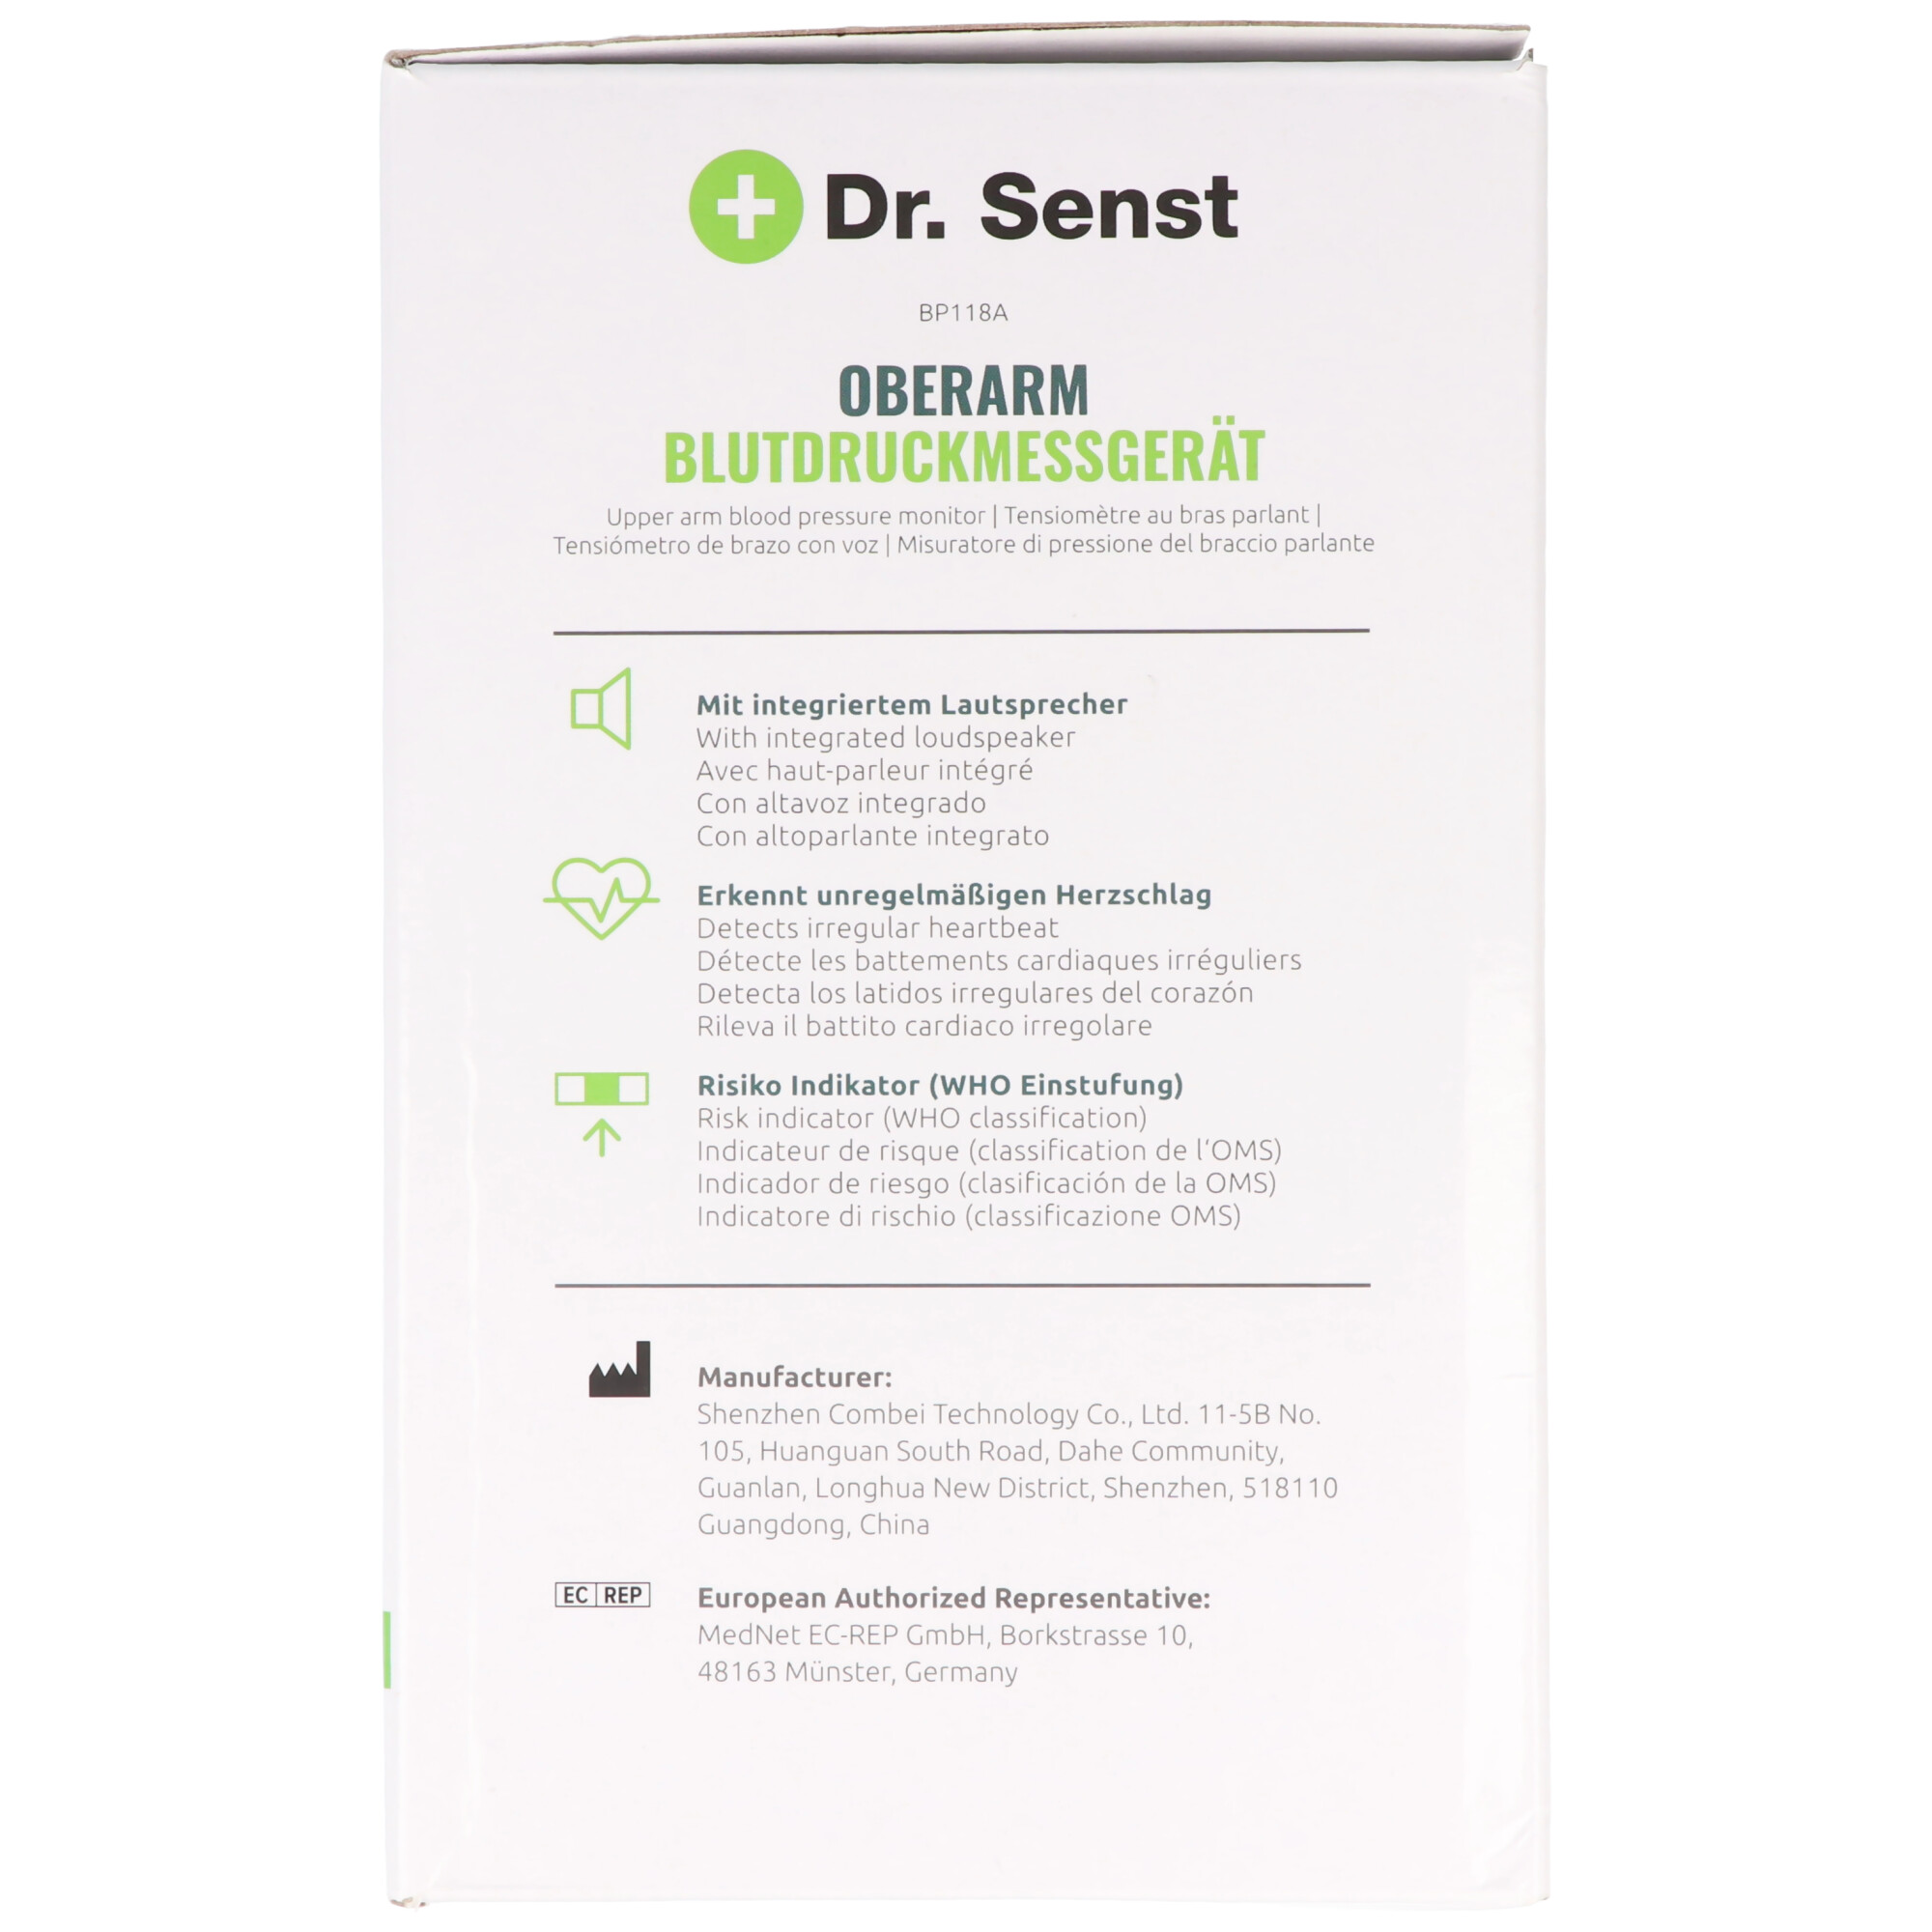 Dr. Senst® Oberarm-Blutdruckmessgerät Sprachausgabe AKP-710302 BP118A mit 